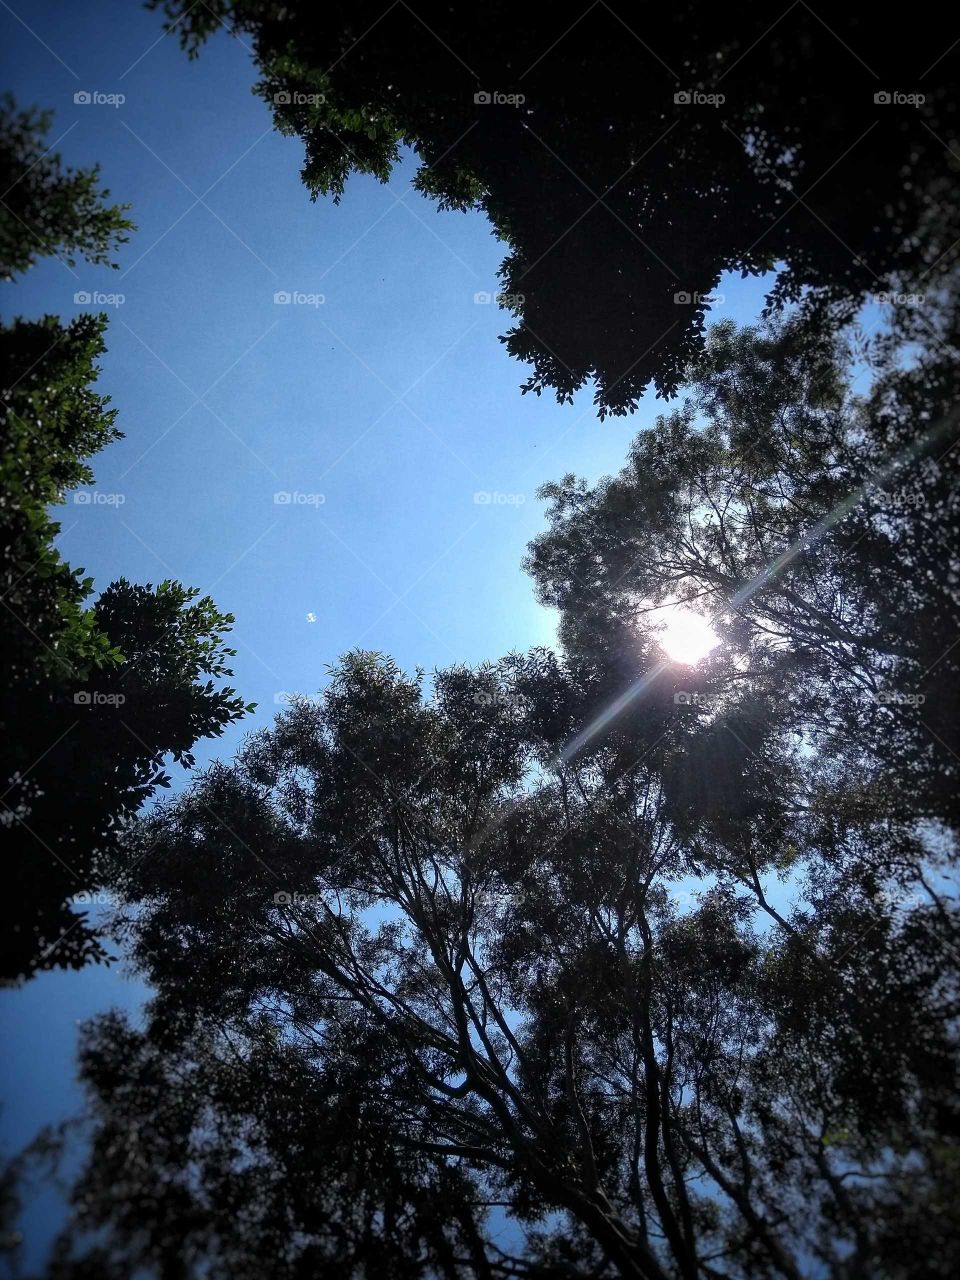 Es una foto tomada con un celular enviando el cielo con unos árboles a las orillas y el sol atravesando con sus rayos a estos árboles